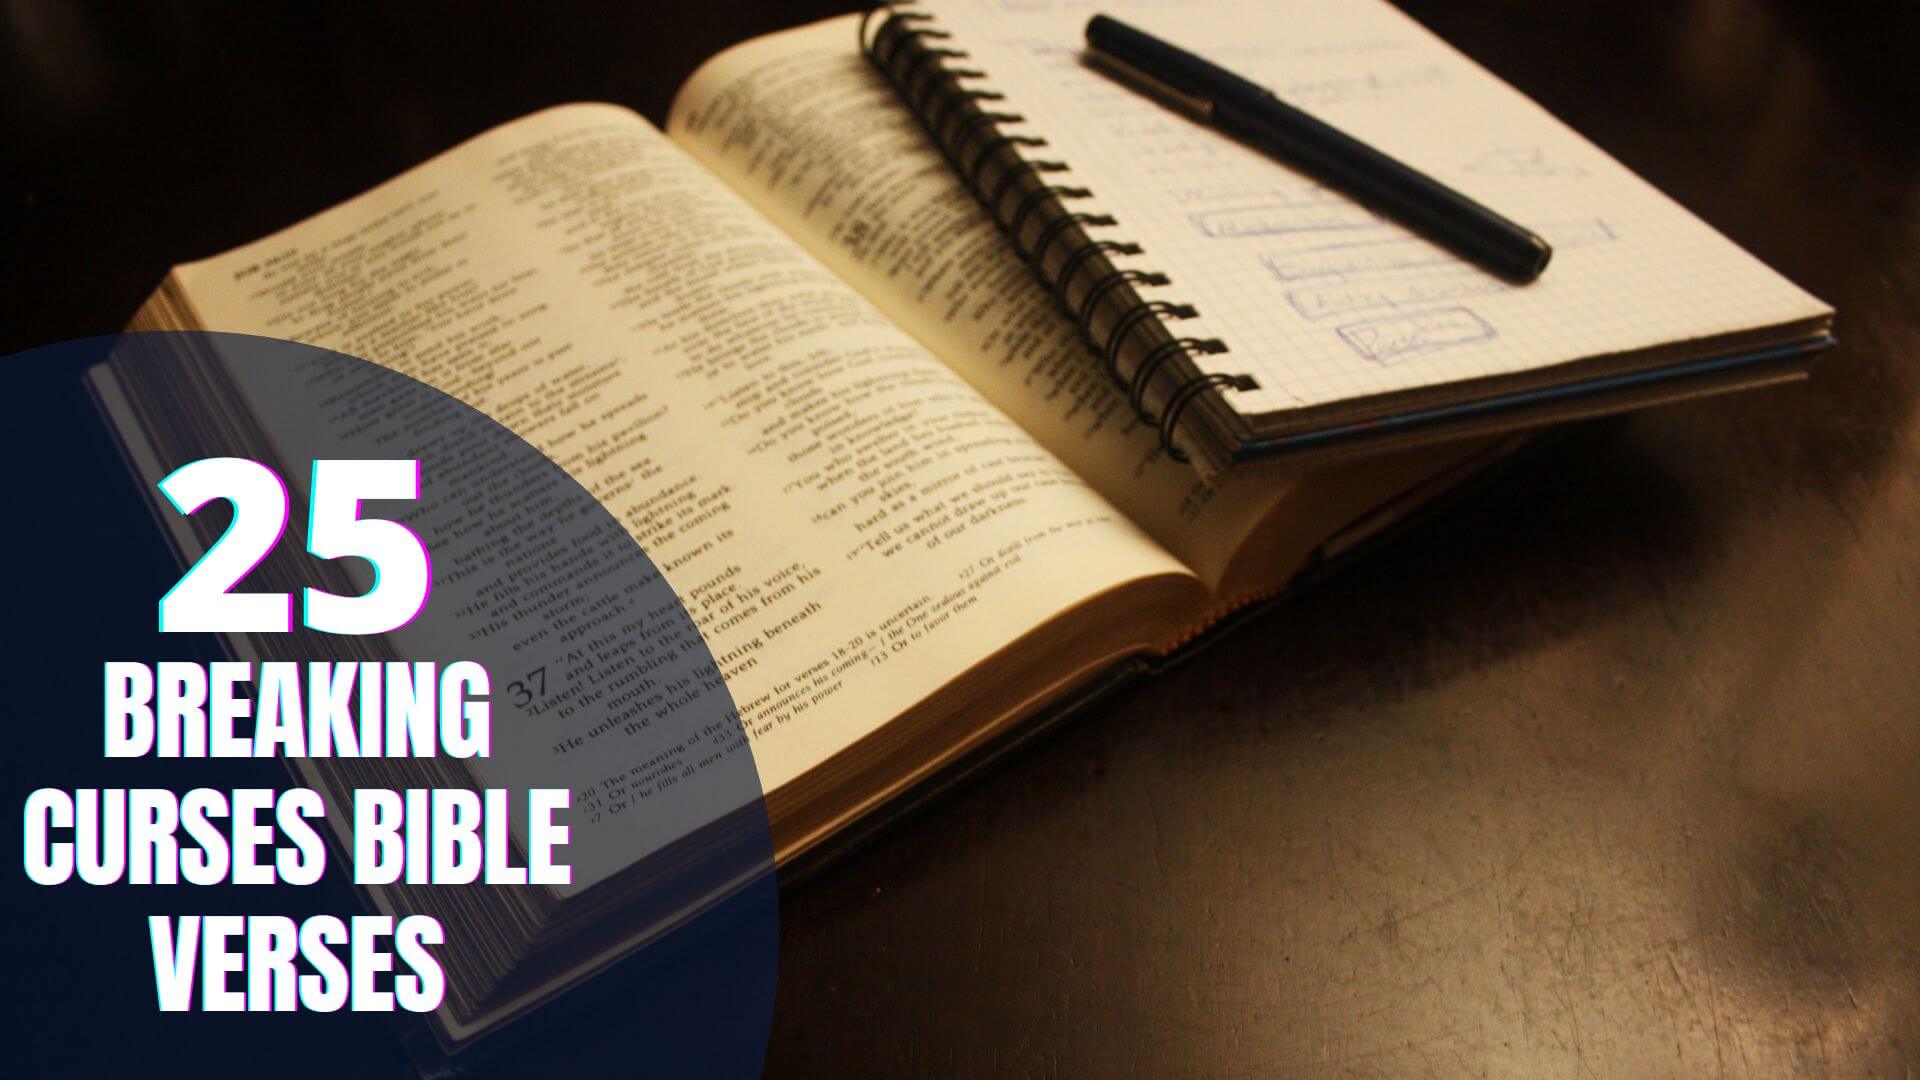 Breaking curses Bible verses